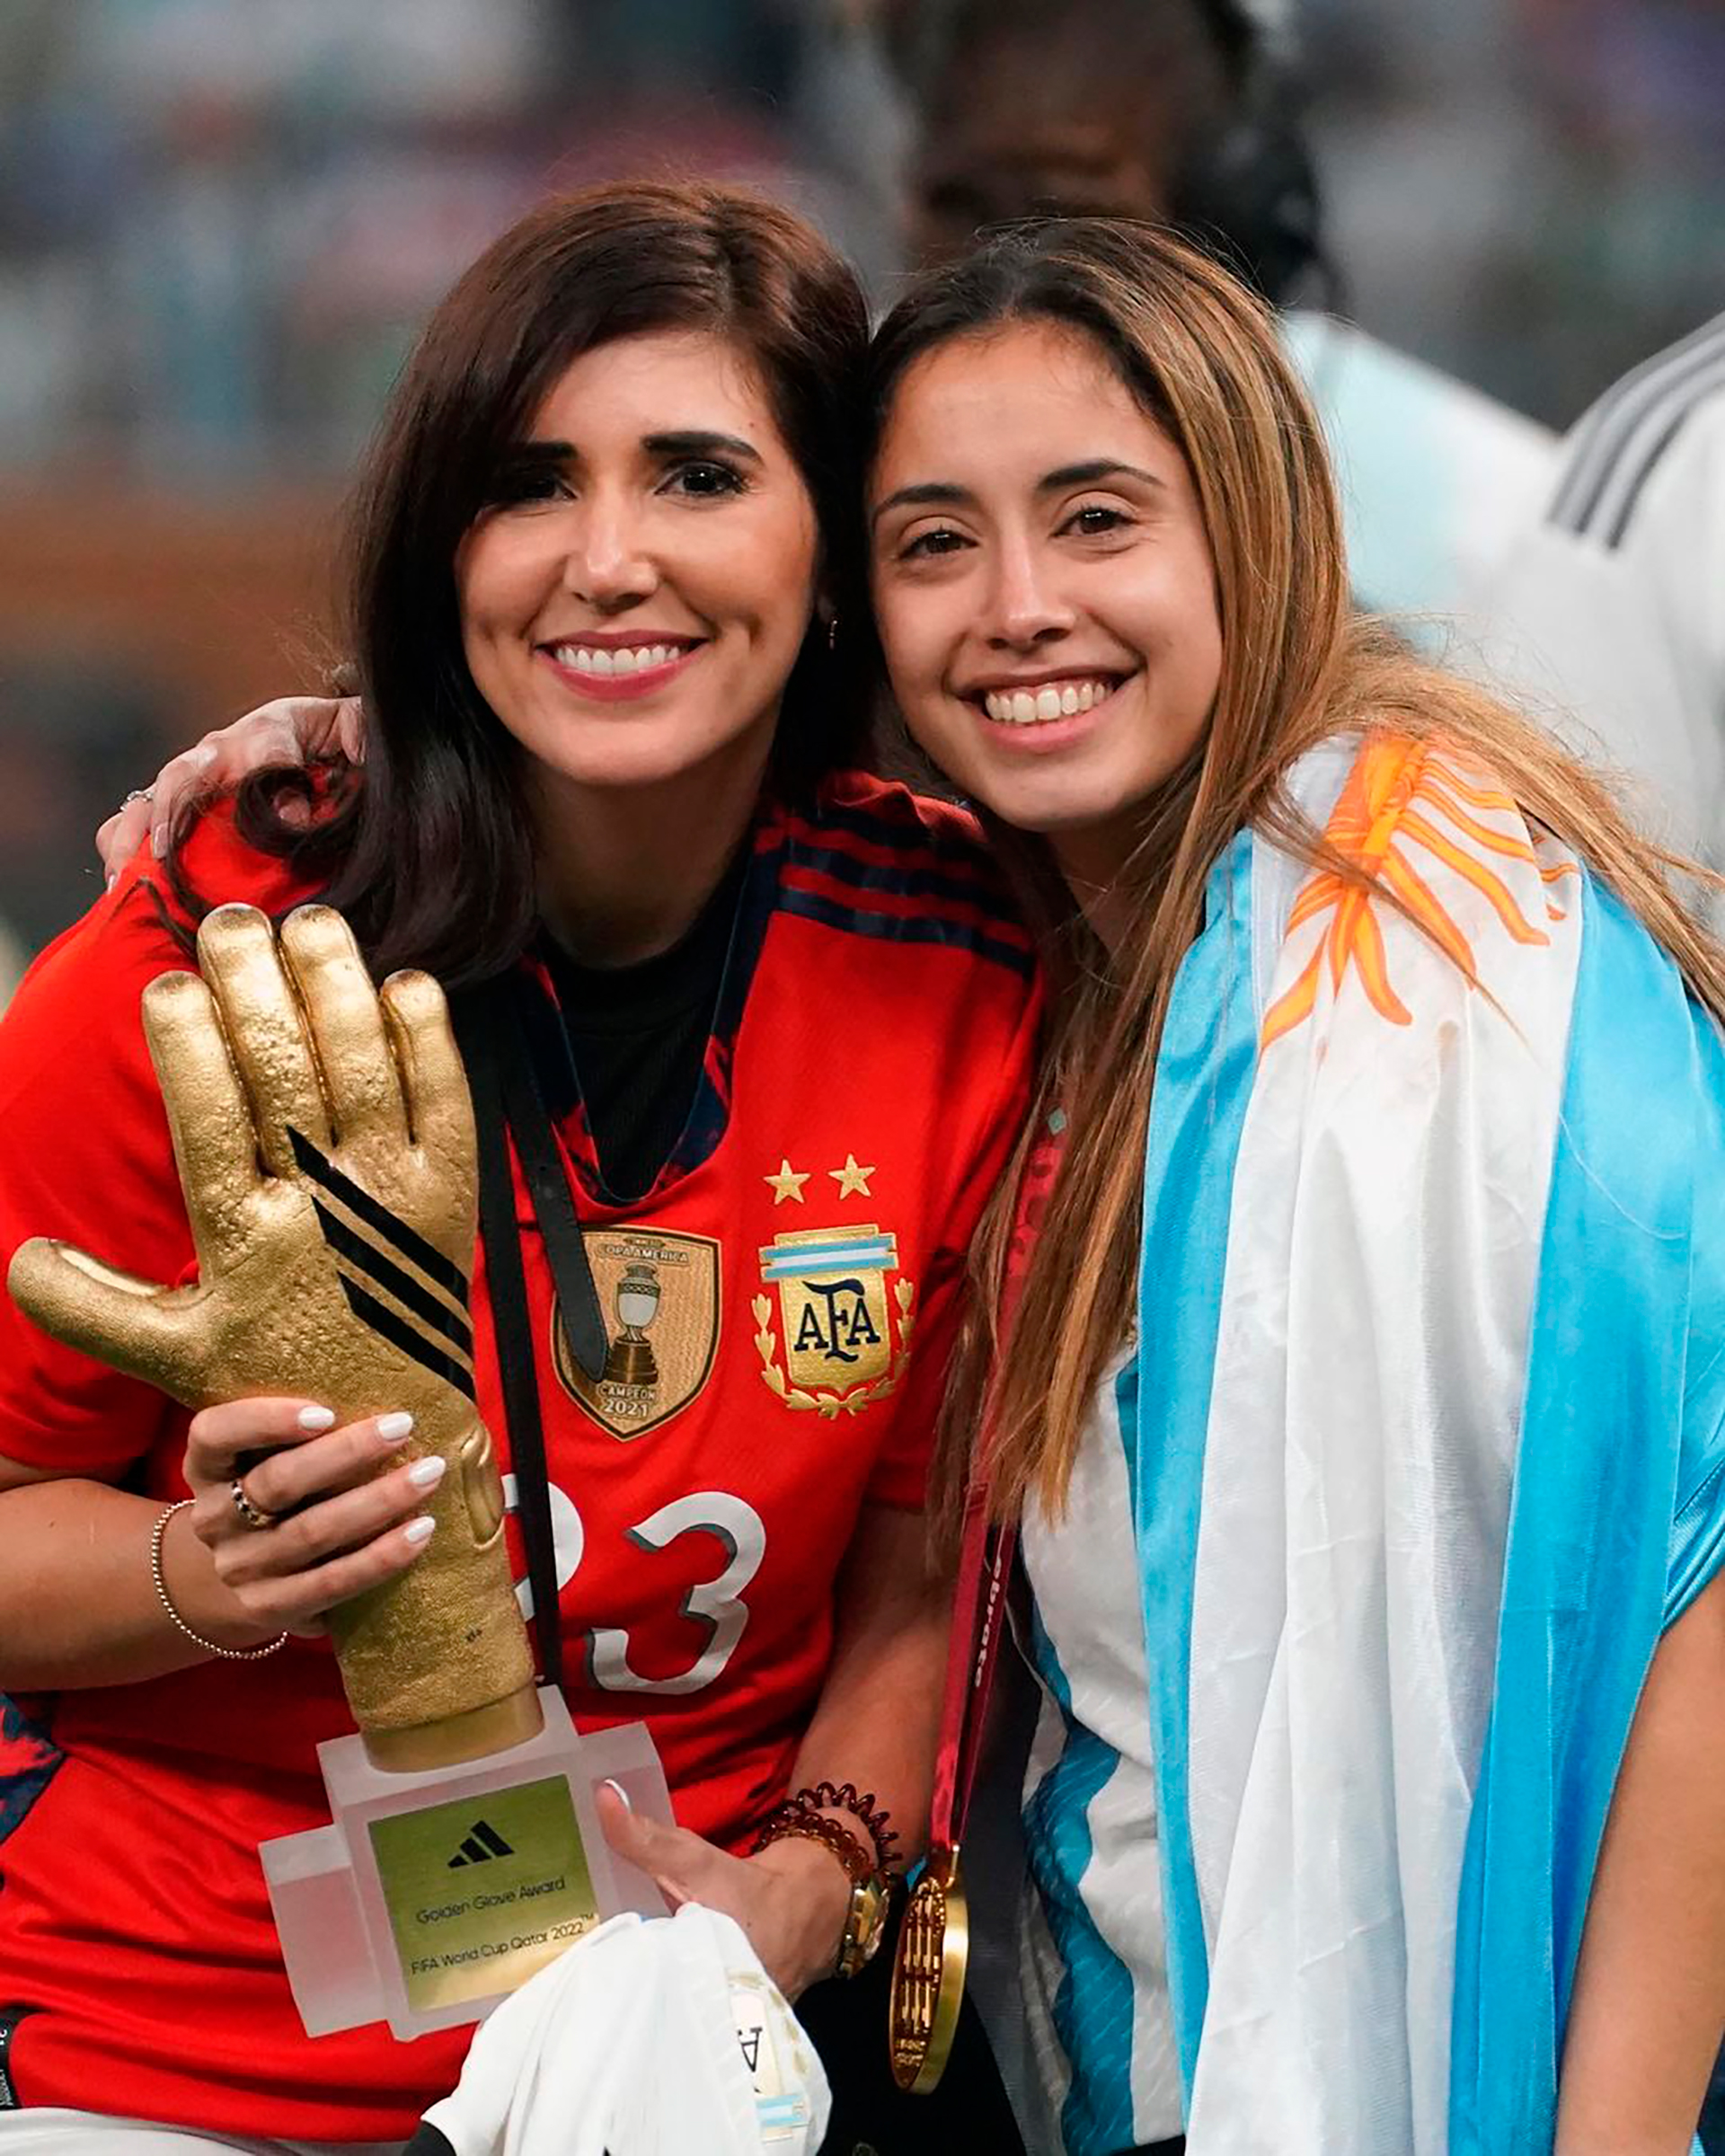 La esposa del Huevo Acuña dejó un emotivo mensaje en redes sociales para homenajear a las campeonas del mundo (Instagram mjuliasilva93)